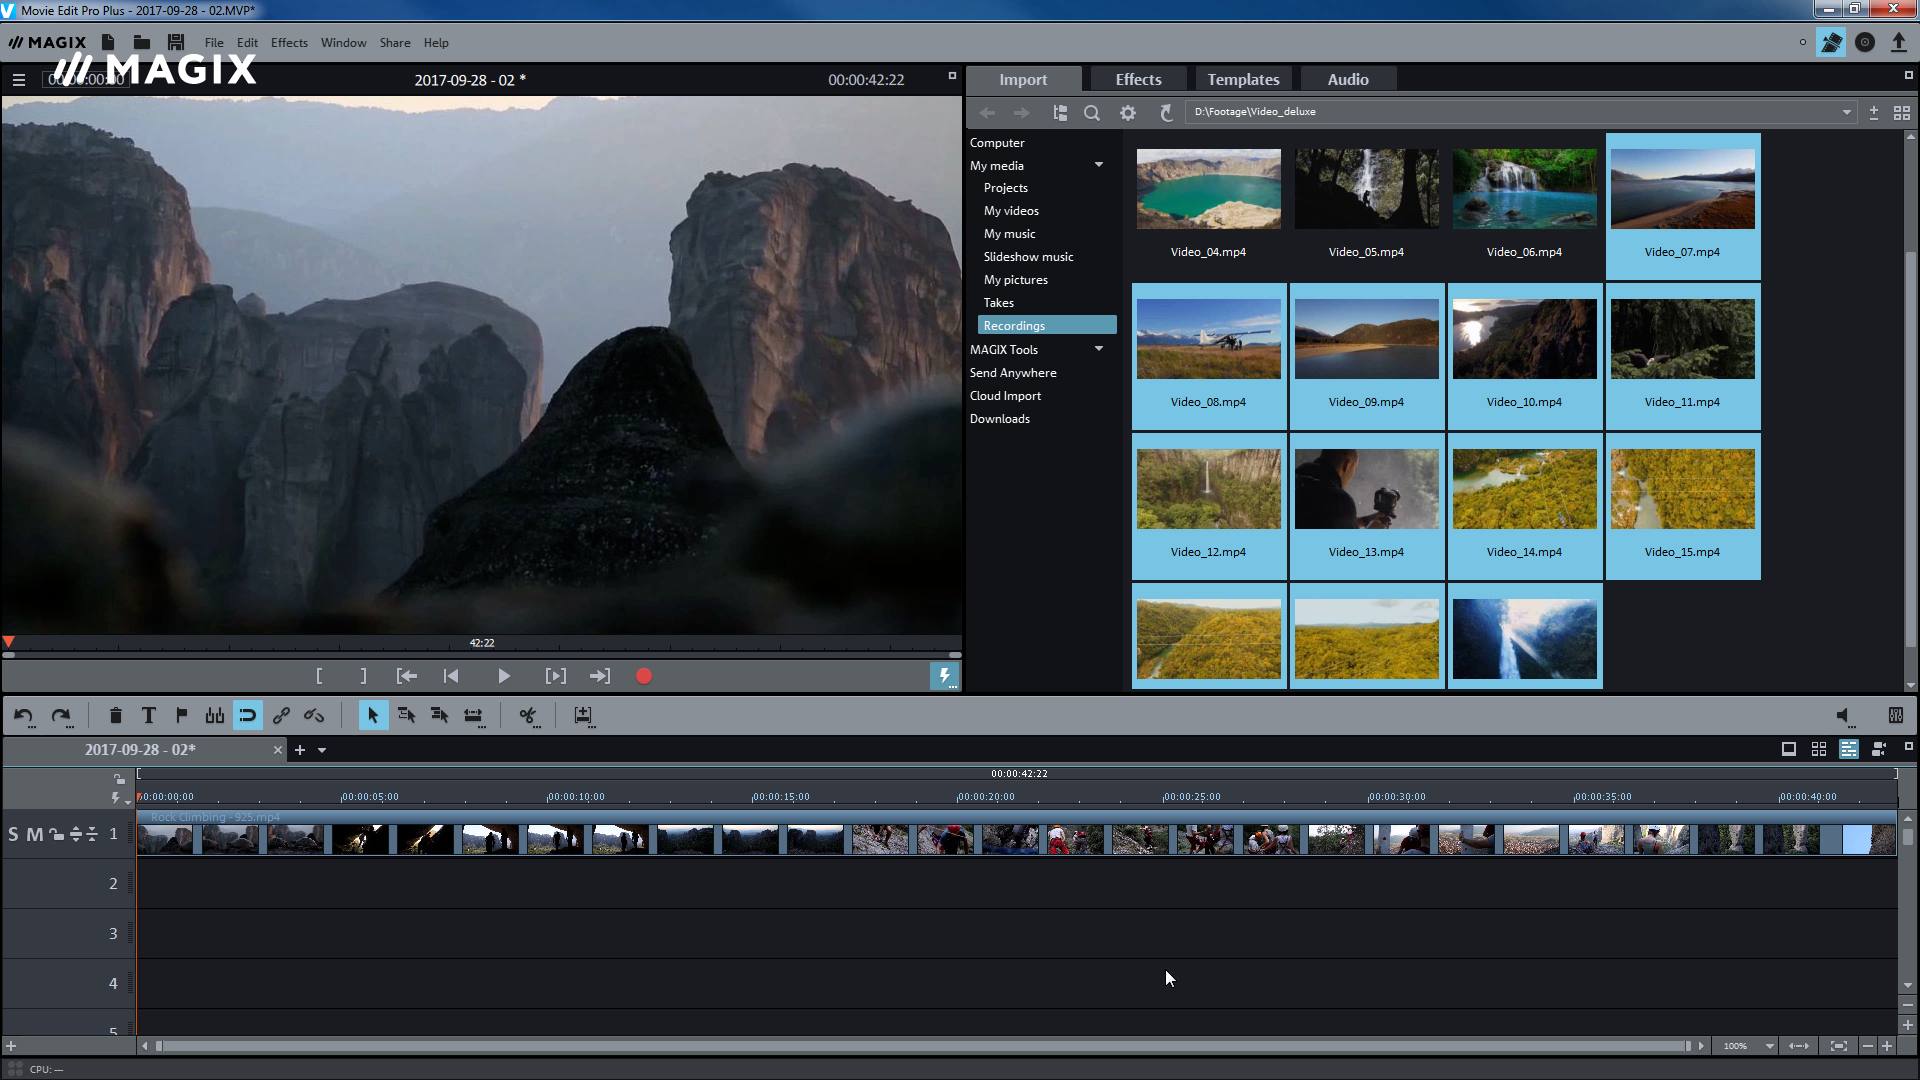 magix video editing software